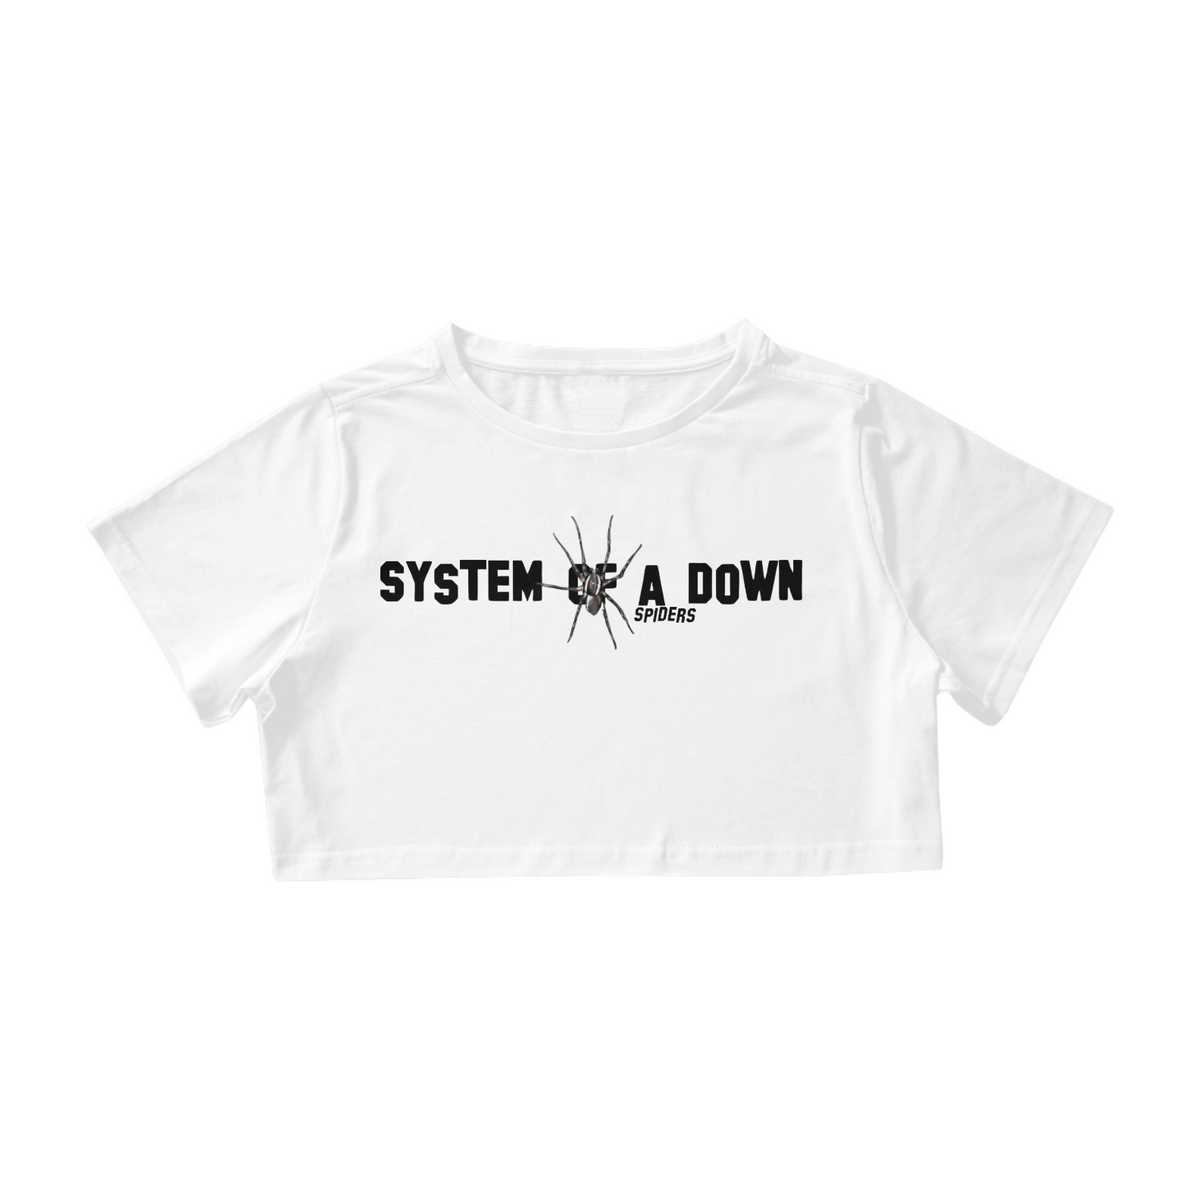 Nome do produto: System Of a Down